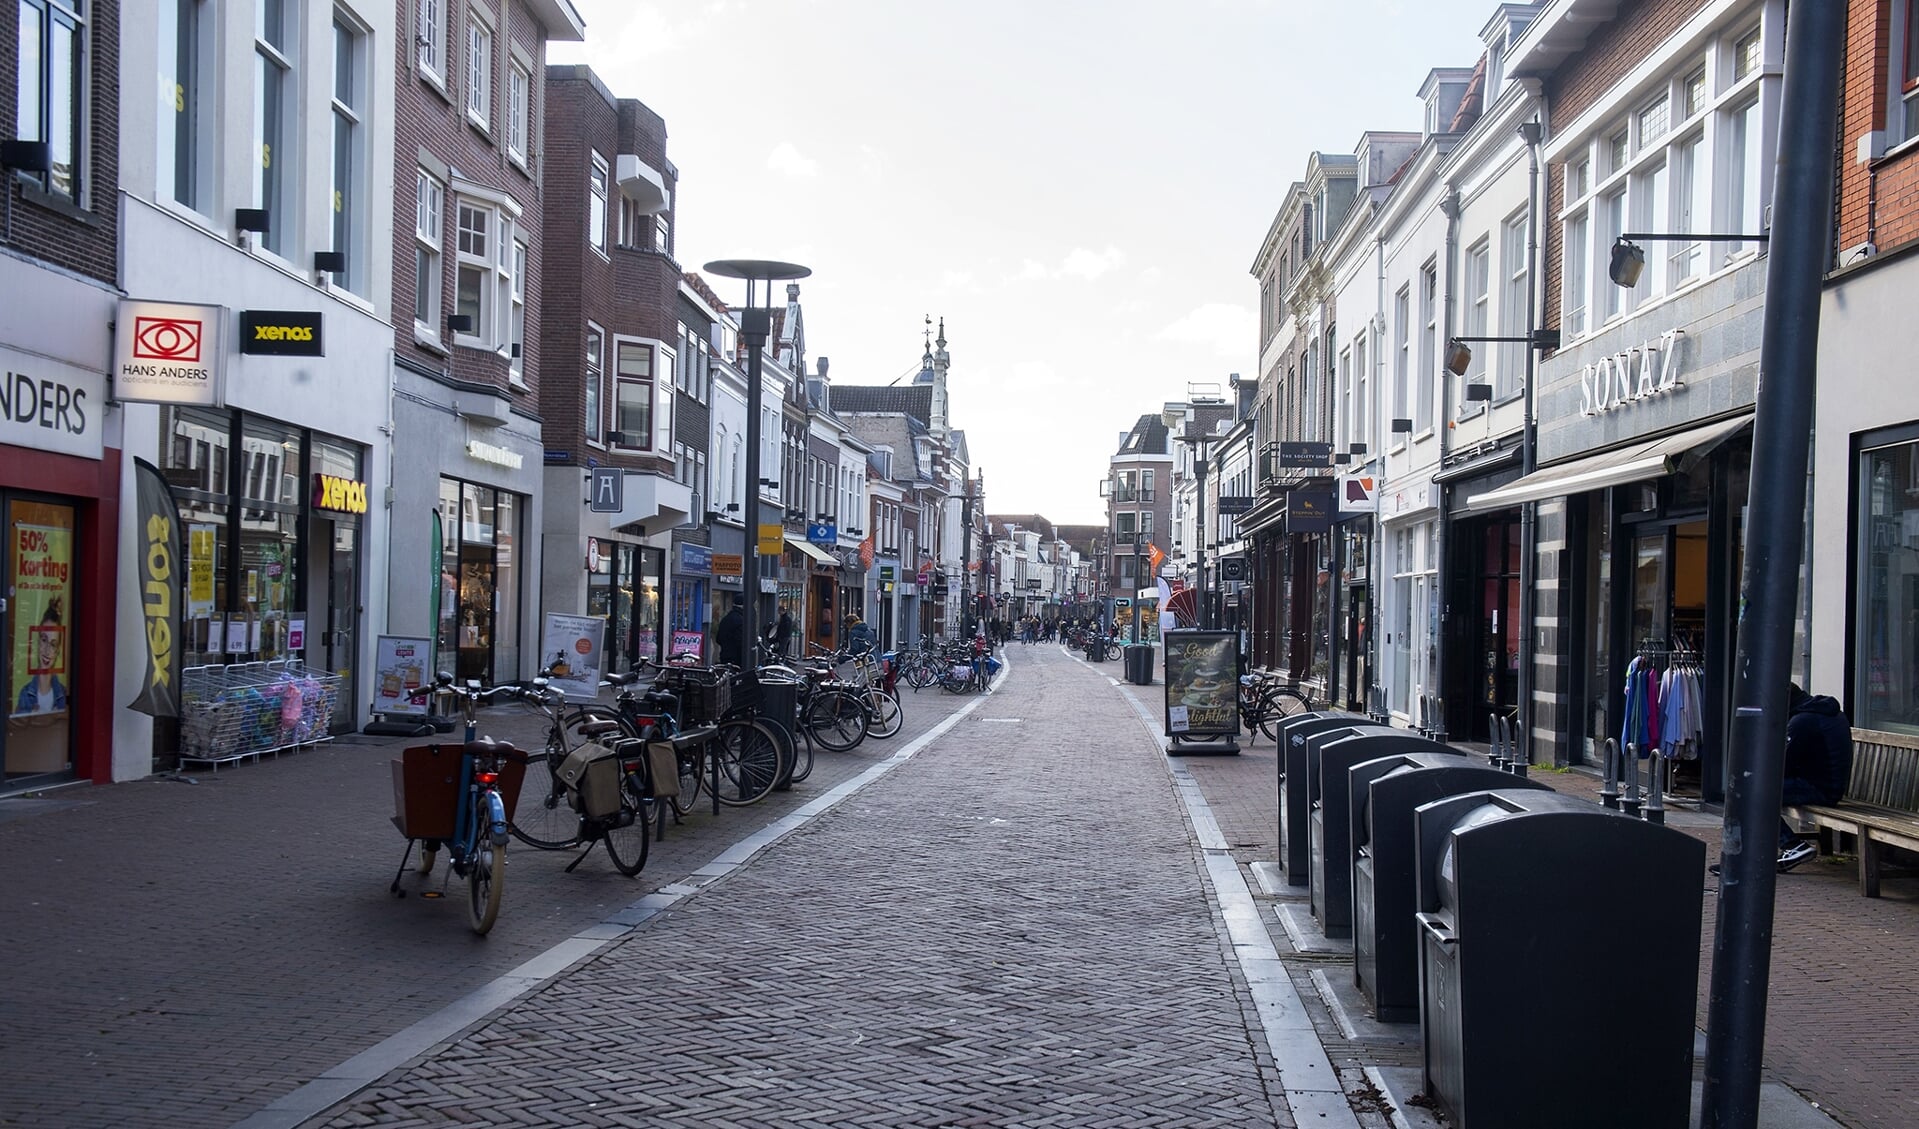  VRU-voorzitter Dijksma schrijft: ,,Namens alle Utrechtse burgemeesters roep ik het kabinet op om oog te hebben voor de zware last die onze winkeliers en andere getroffen ondernemers nu moeten dragen. Het water staat hen aan de lippen, maar ze krijgen nauwelijks steun." 